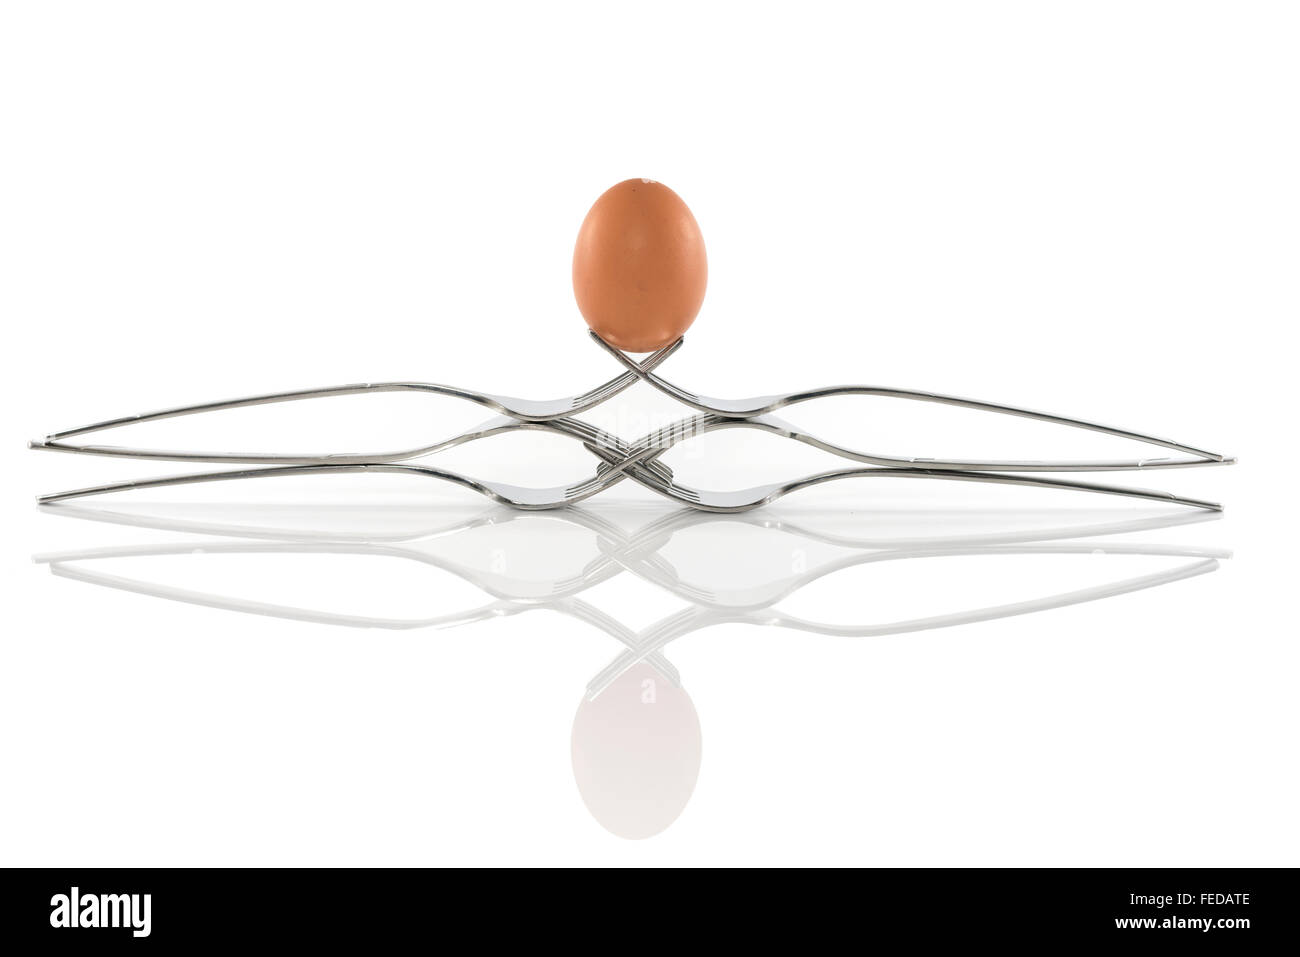 Equilibrio de huevo en seis horquillas aislado en blanco Foto de stock